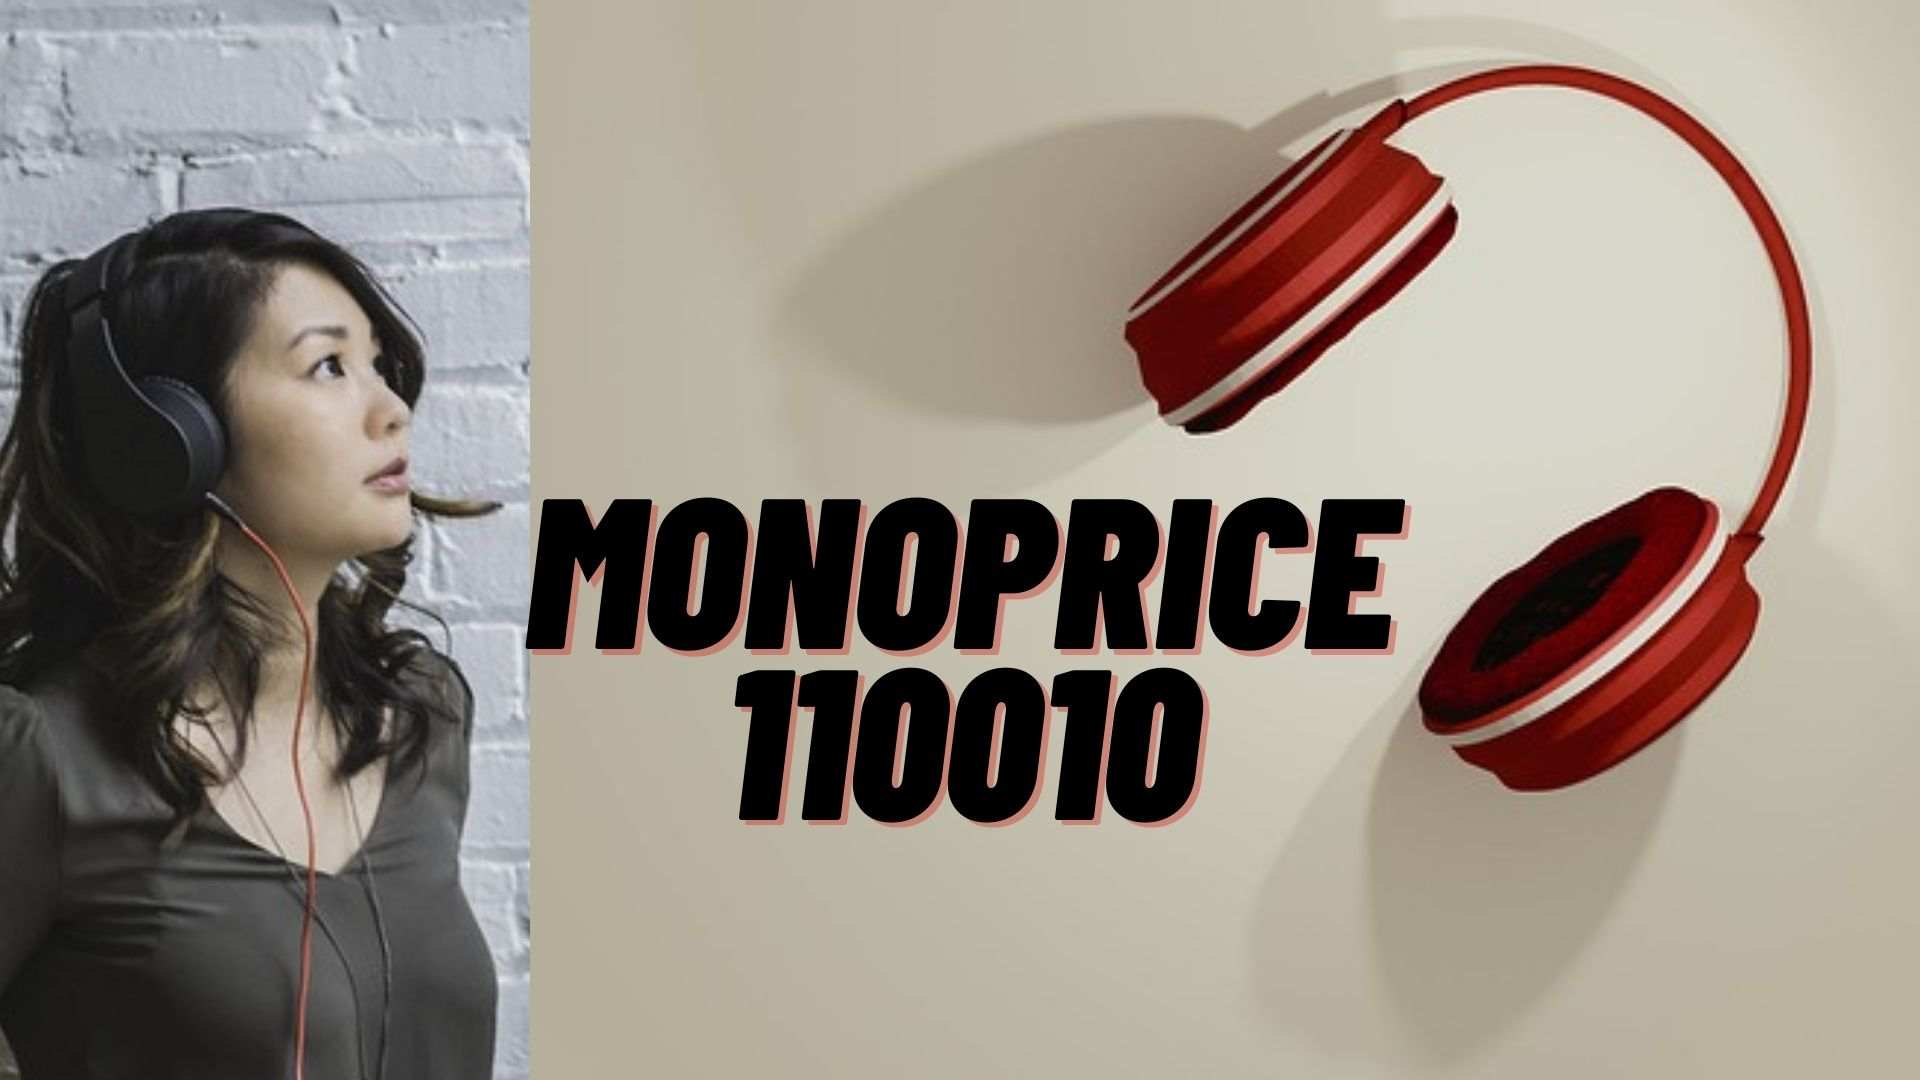 Monoprice 110010: Noise Cancelling Headphones – Specs, Design & Price